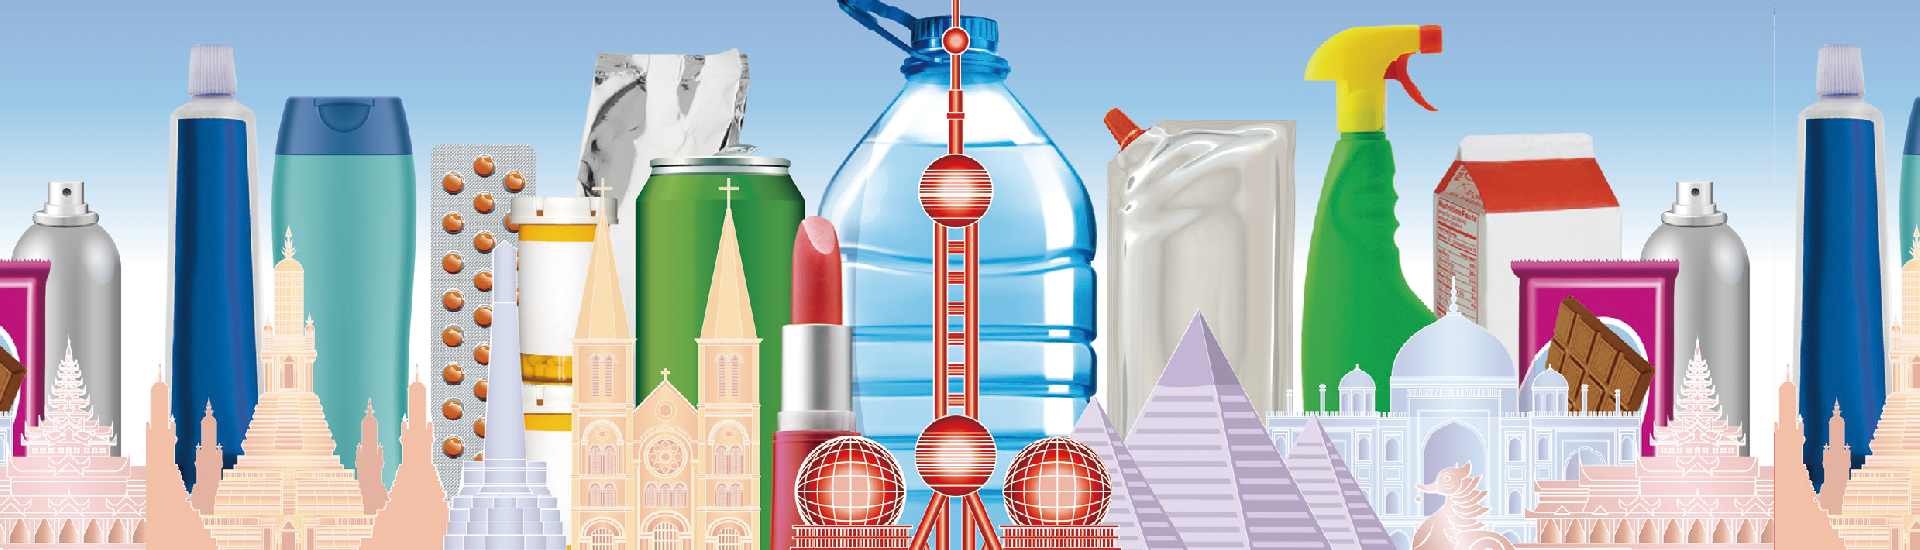 2024上海国际食品加工与包装机械展览会联展